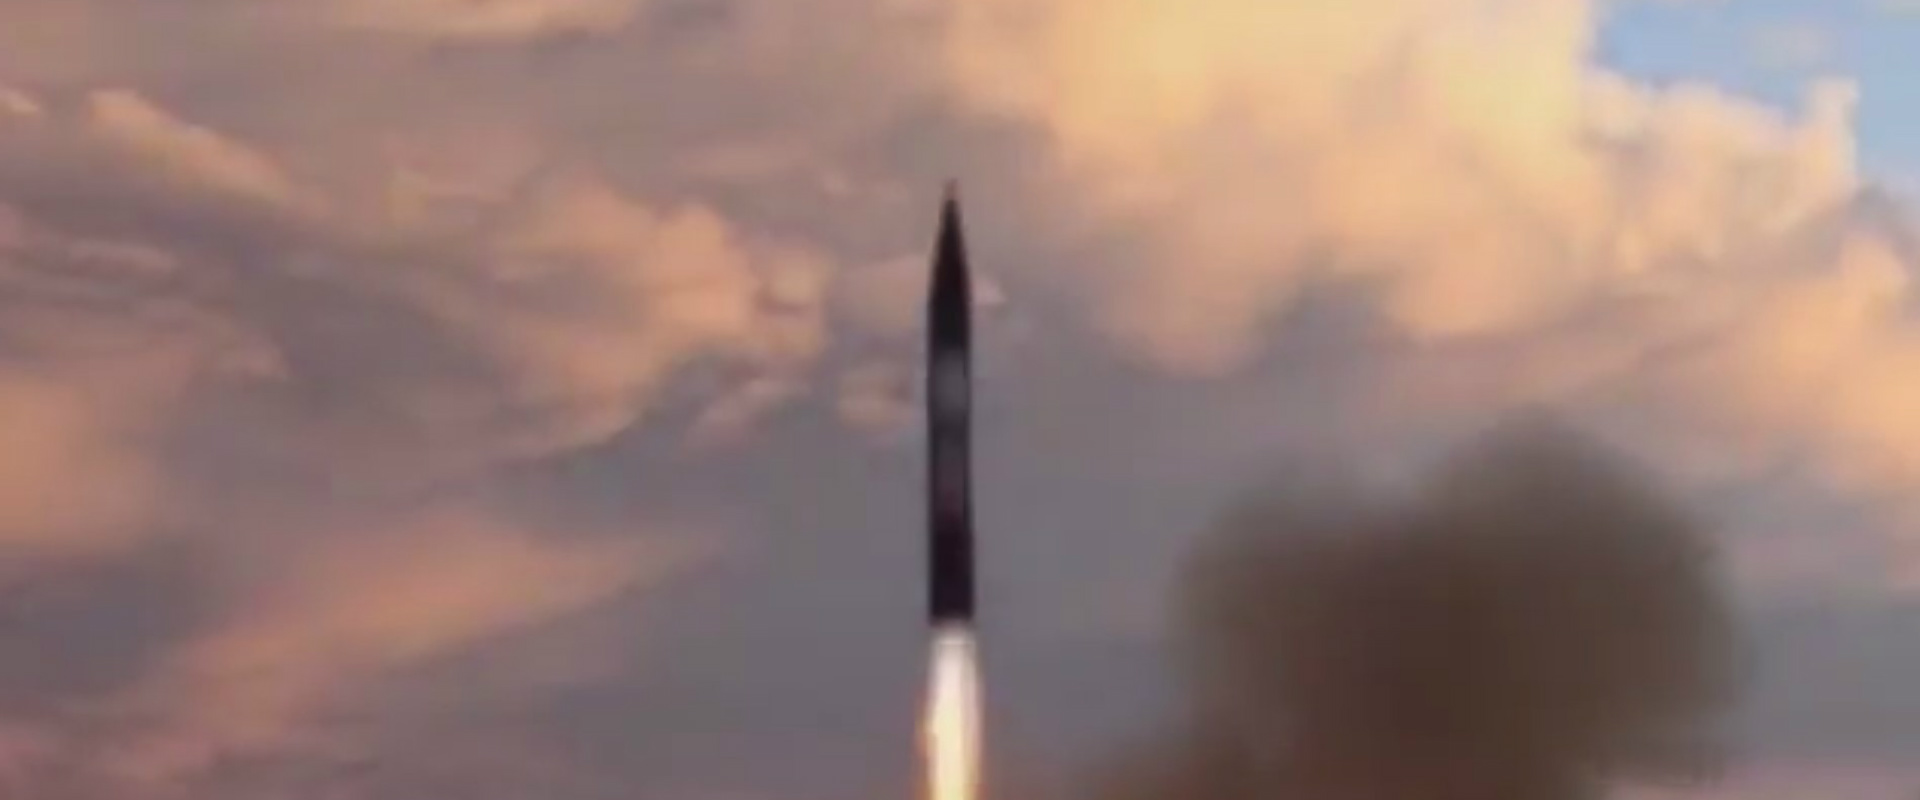 צילום מתוך תיעוד ניסוי השיגור שפירסמה הטלוויזיה הא